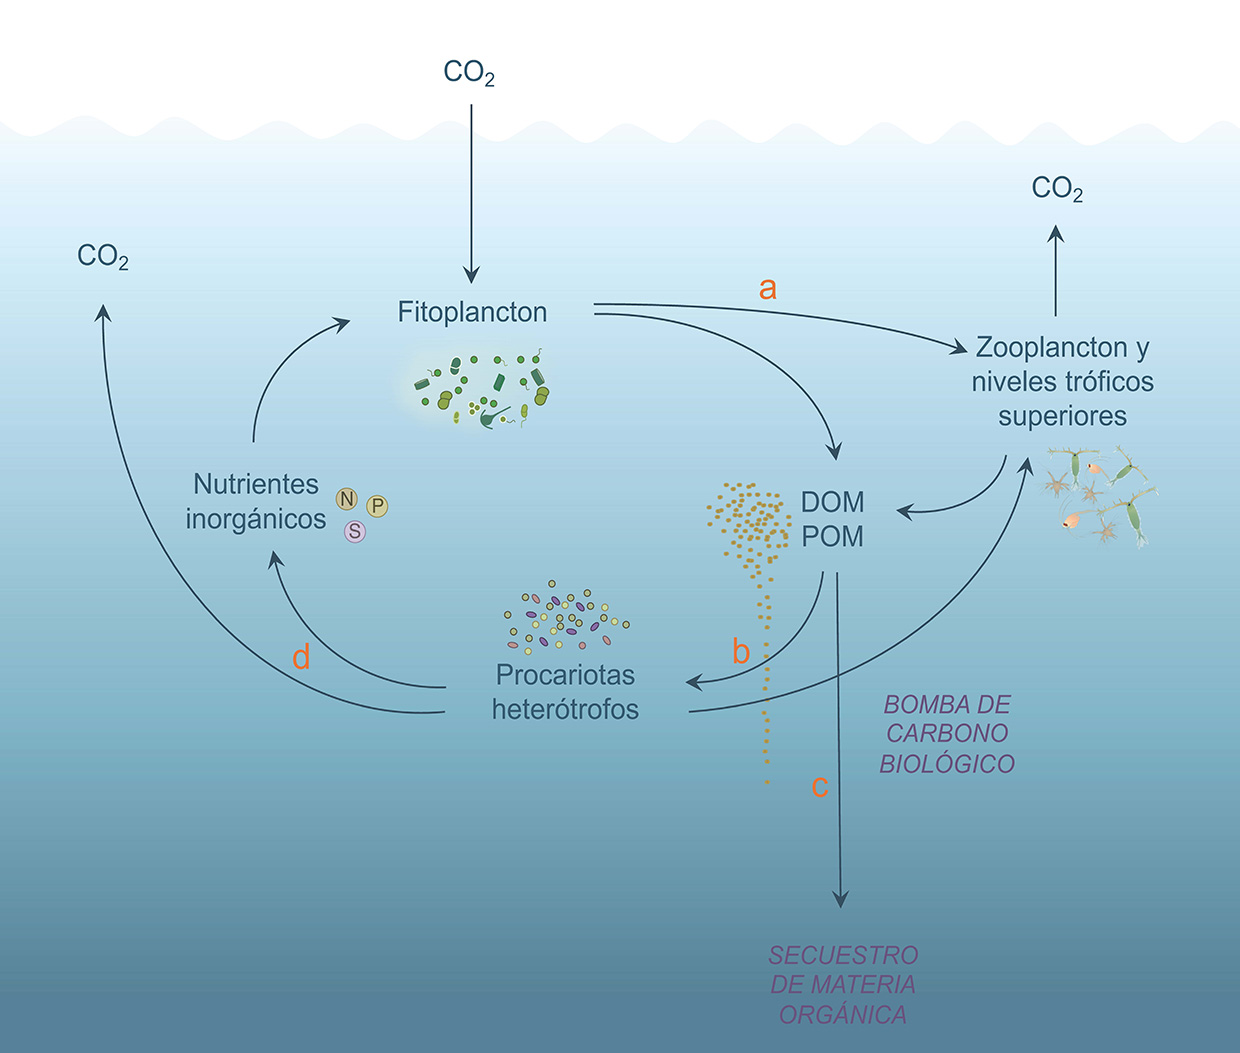 La red trófica microbiana y el ciclo del carbono. © Cati Mena (COB-IEO)